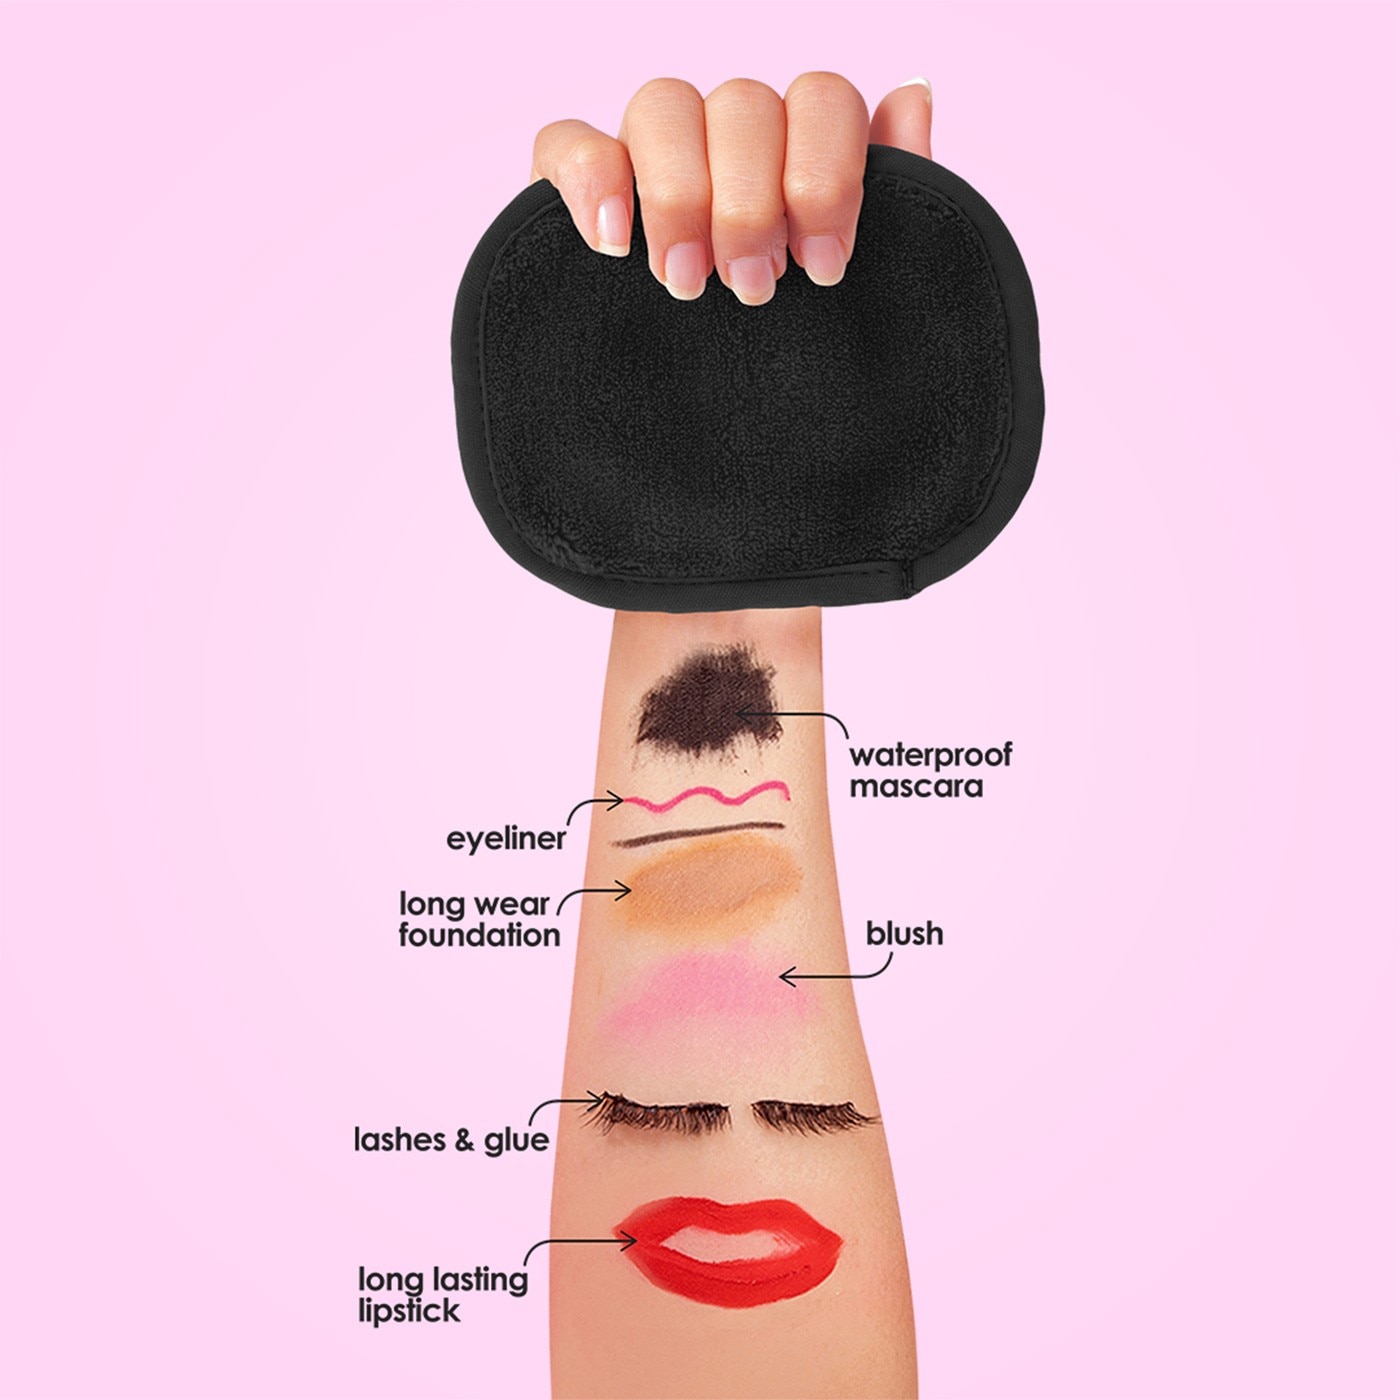 The Original MakeUp Eraser 卸妝巾組，專利技術超柔抗菌纖維，雙面使用，短毛面清除彩妝、長毛面清潔去角質，使用溫水即可卸除彩妝。